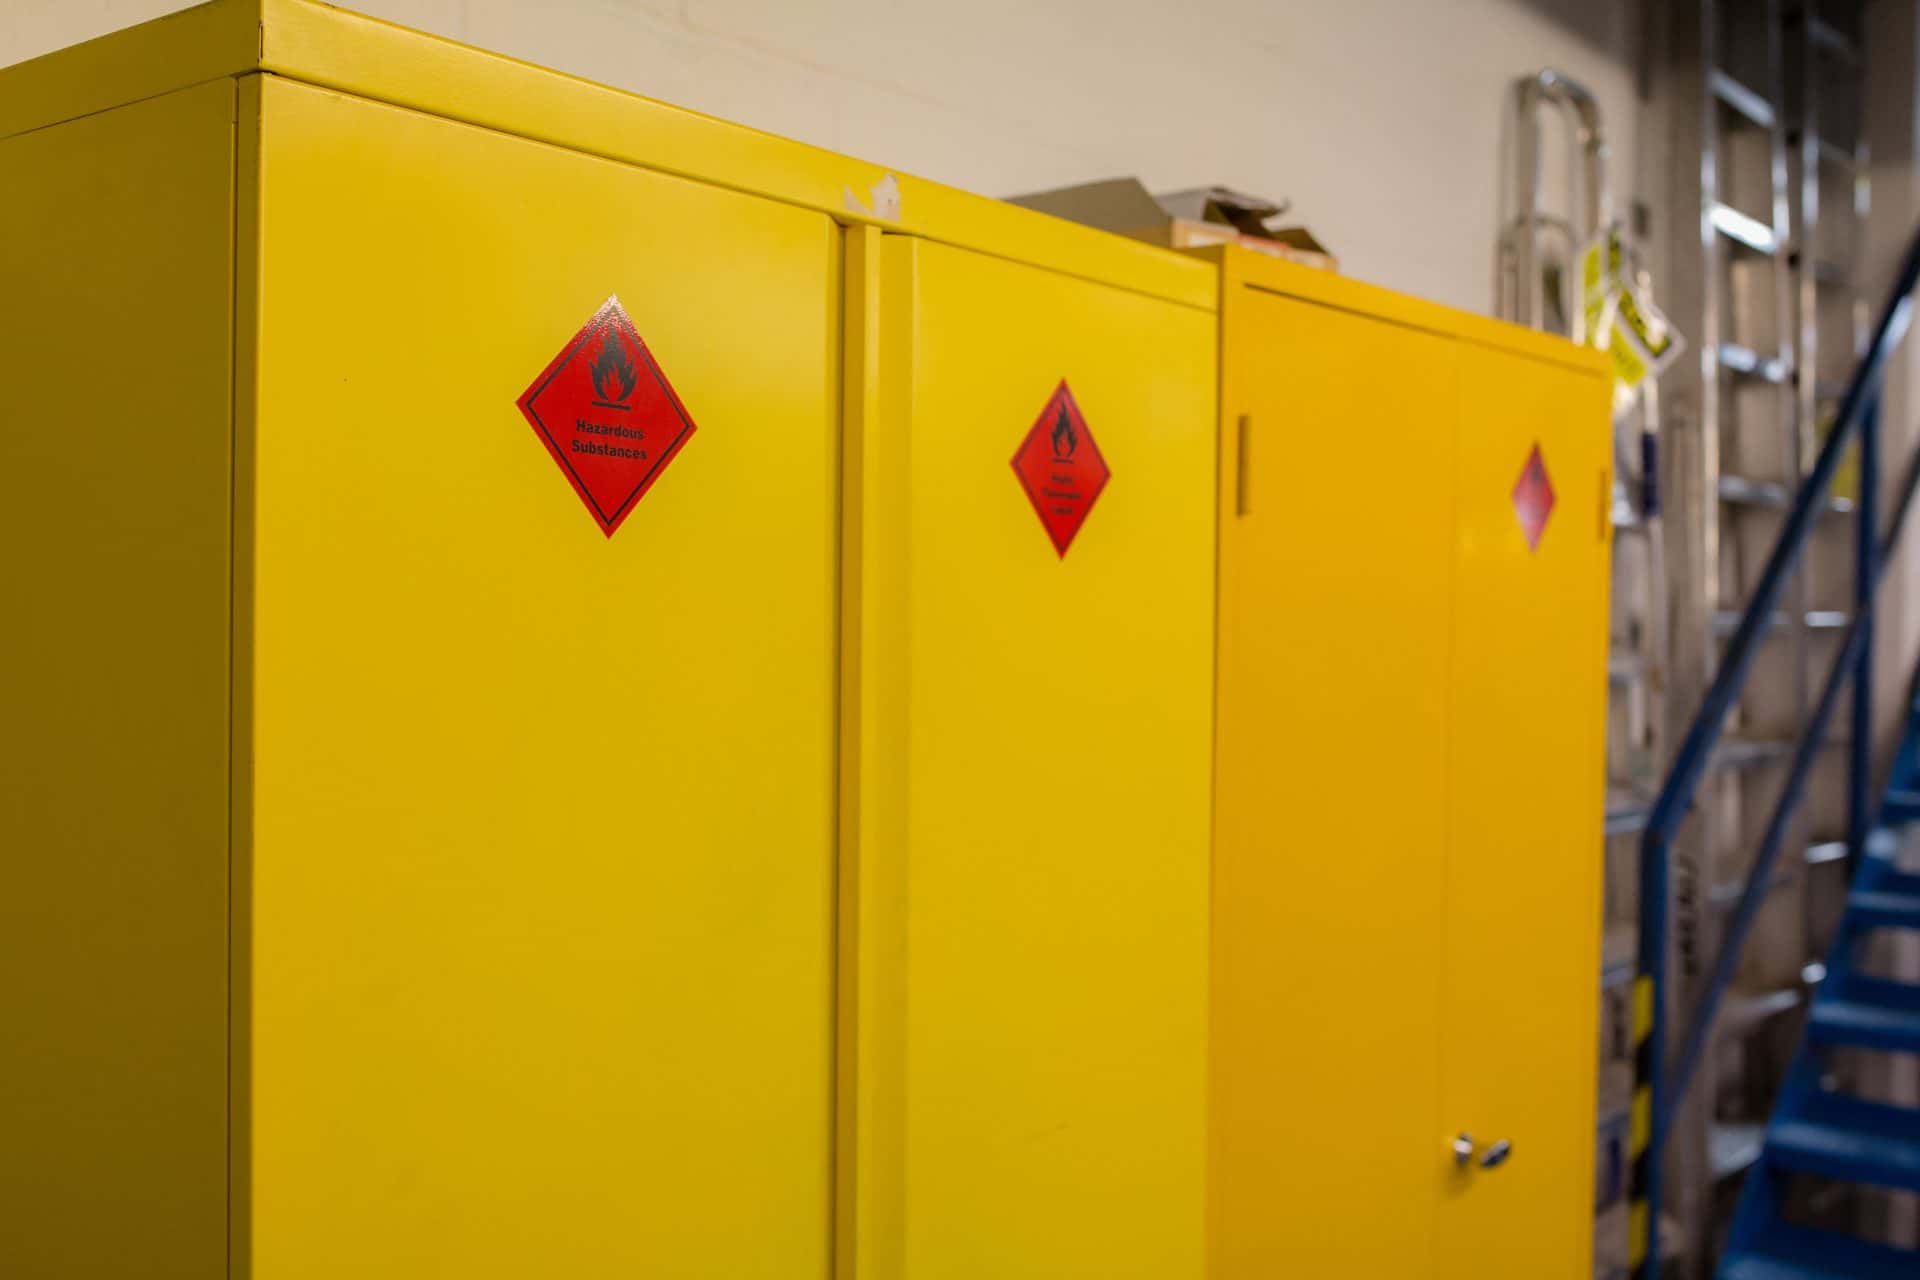 Biztonsági szekrények kiválasztása veszélyes anyagok tárolásához a Manutan EXPERT segítségével